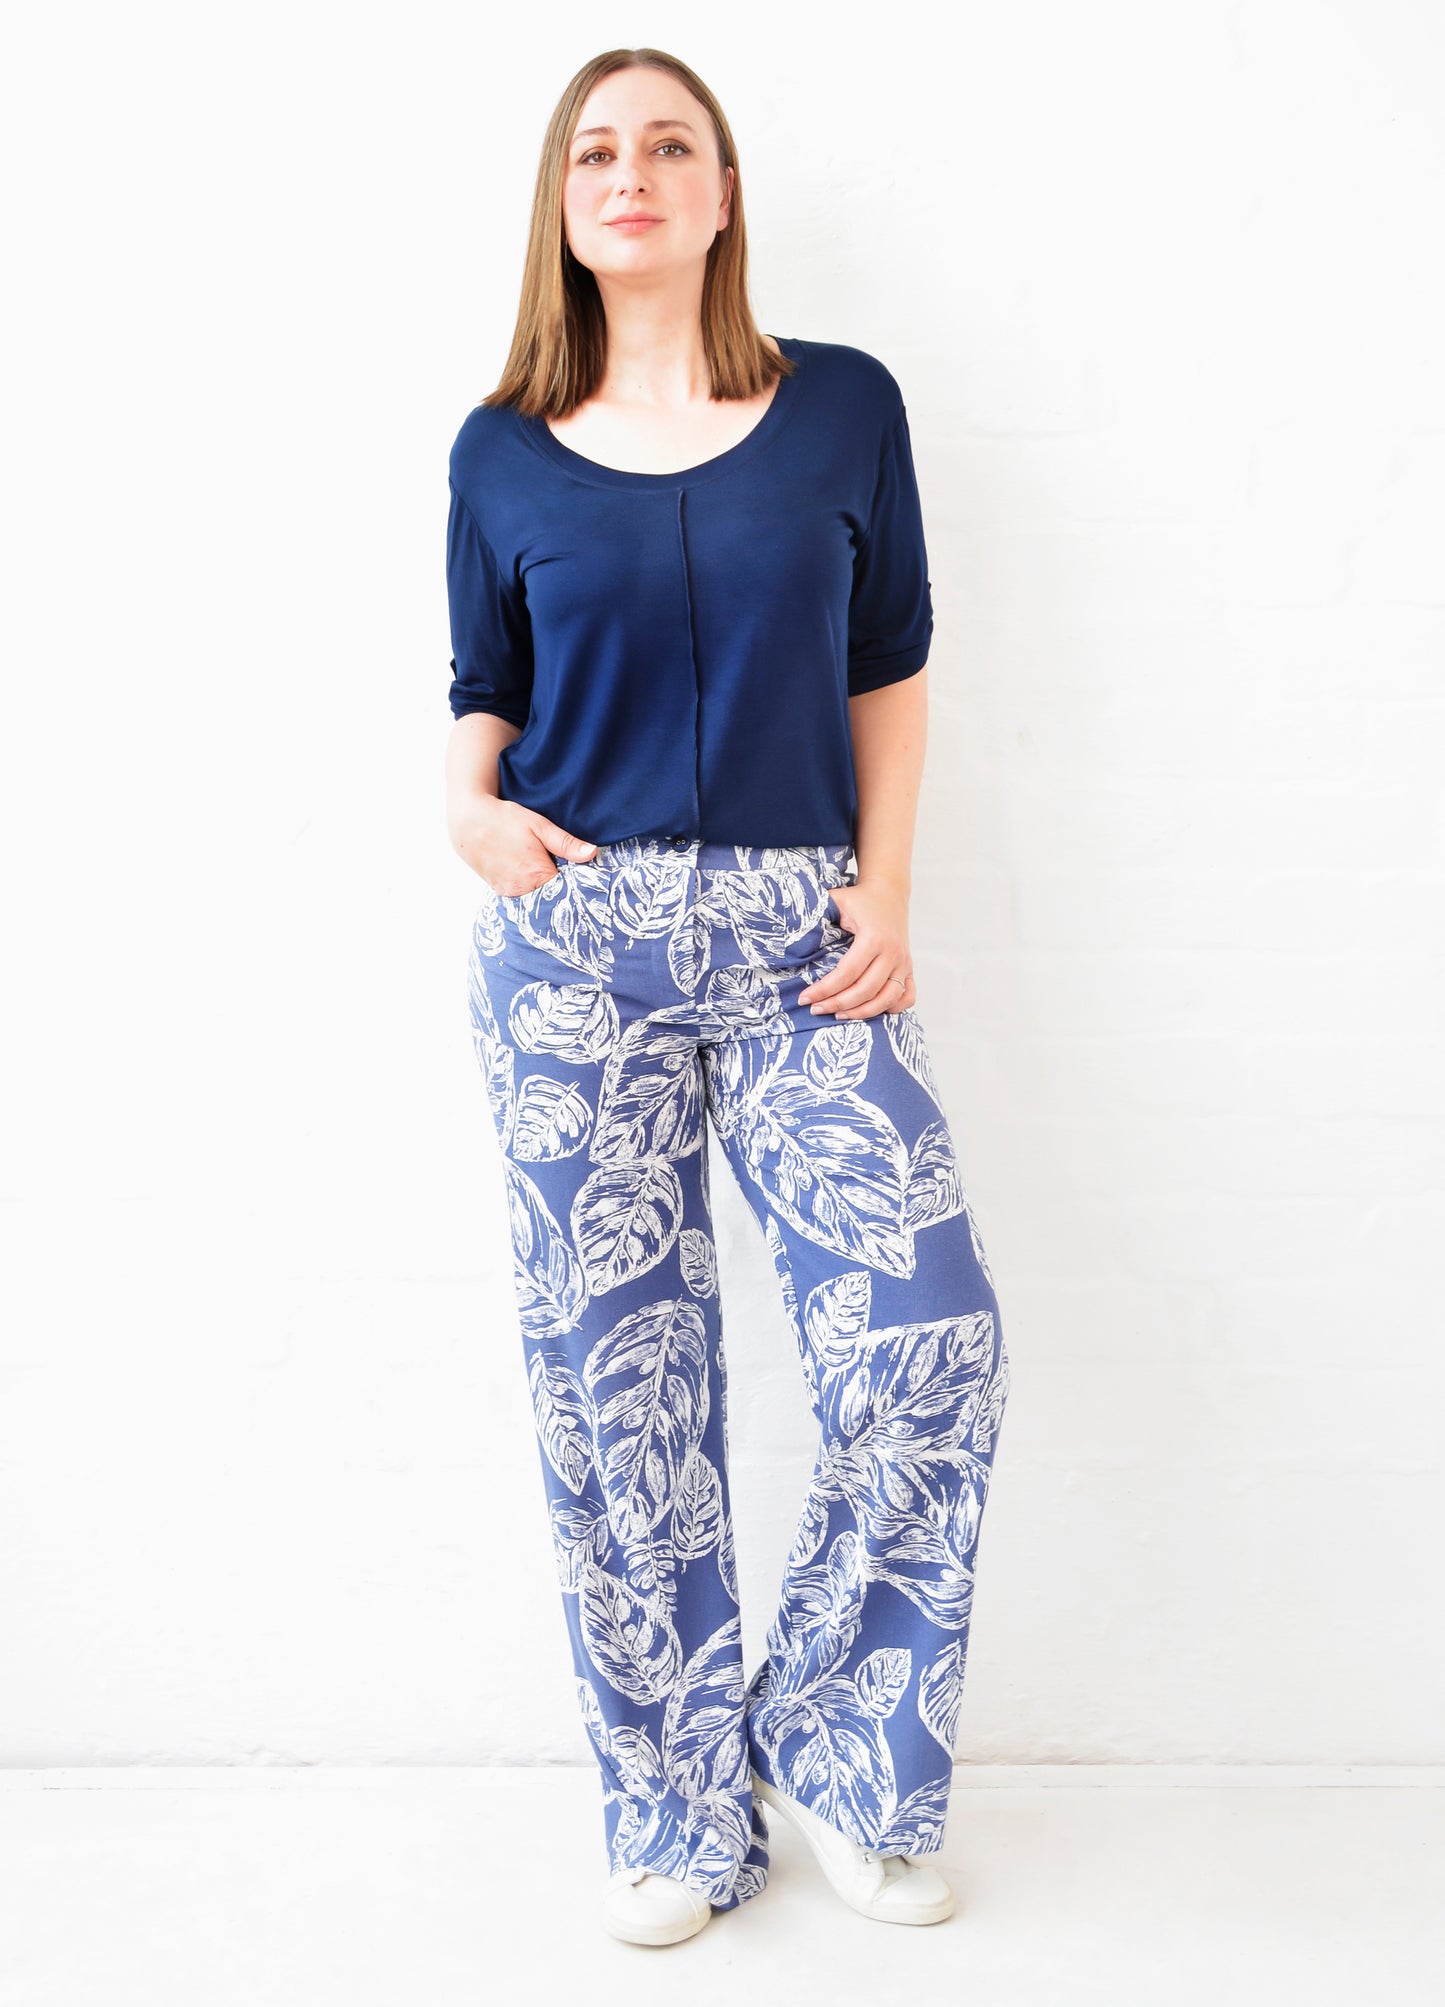 Savannah trousers in indigo Linnea print size 36